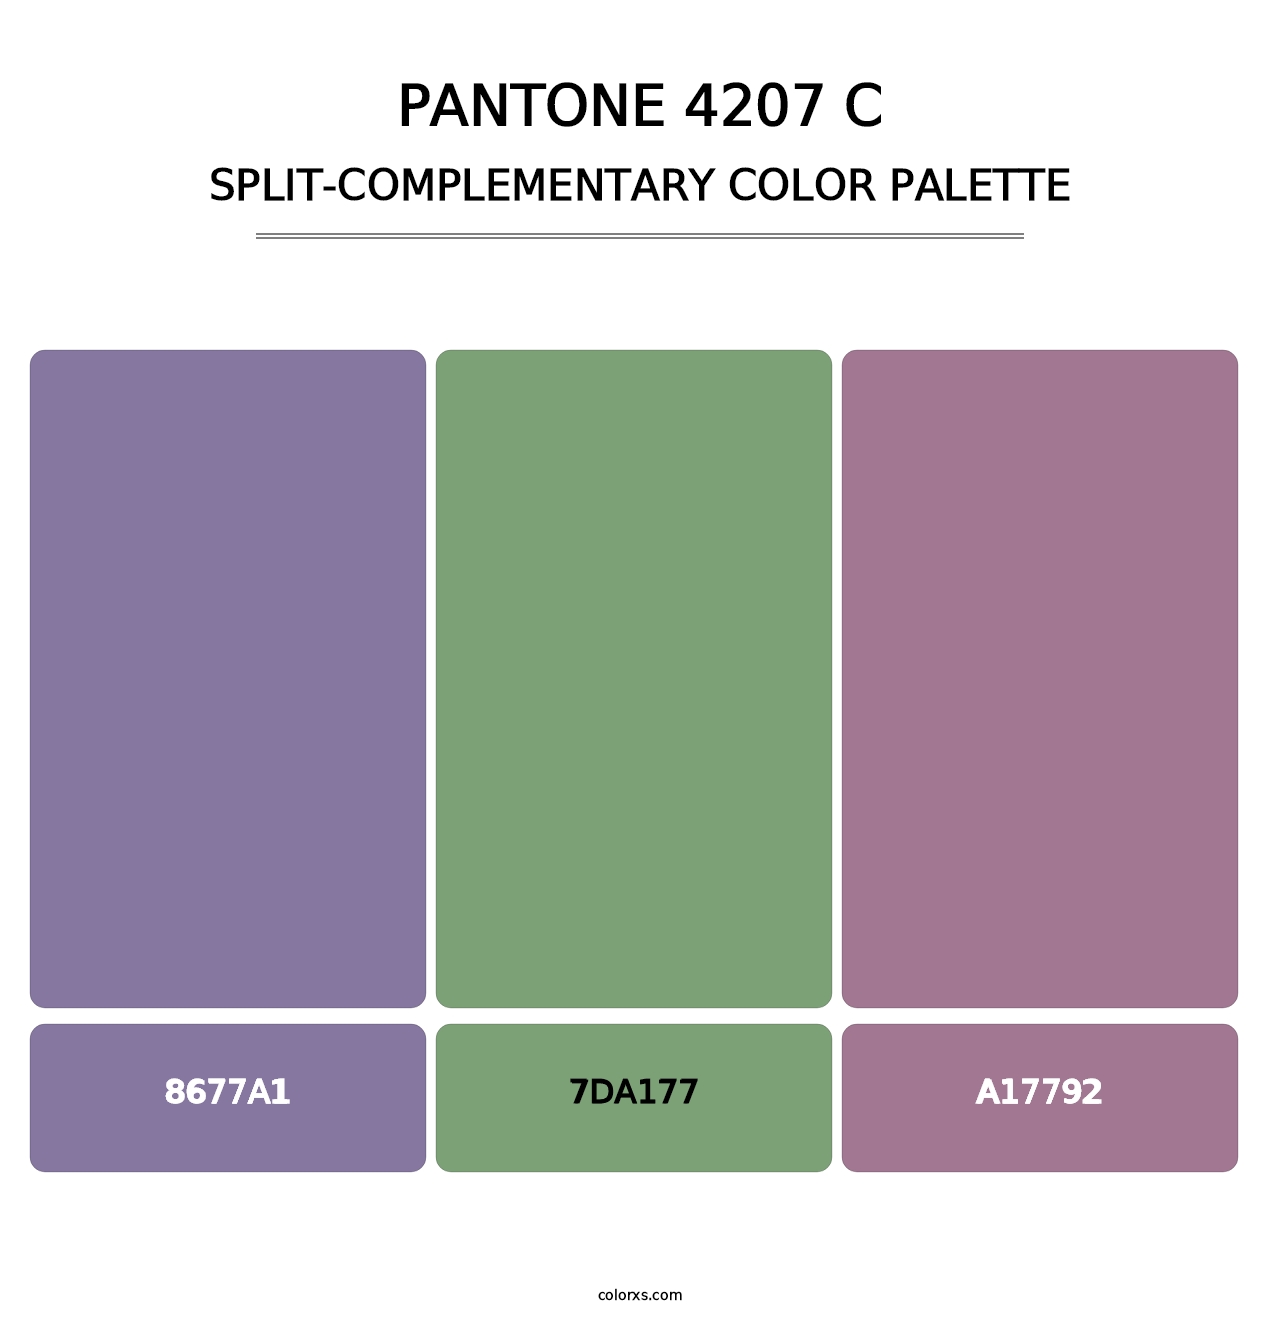 PANTONE 4207 C - Split-Complementary Color Palette